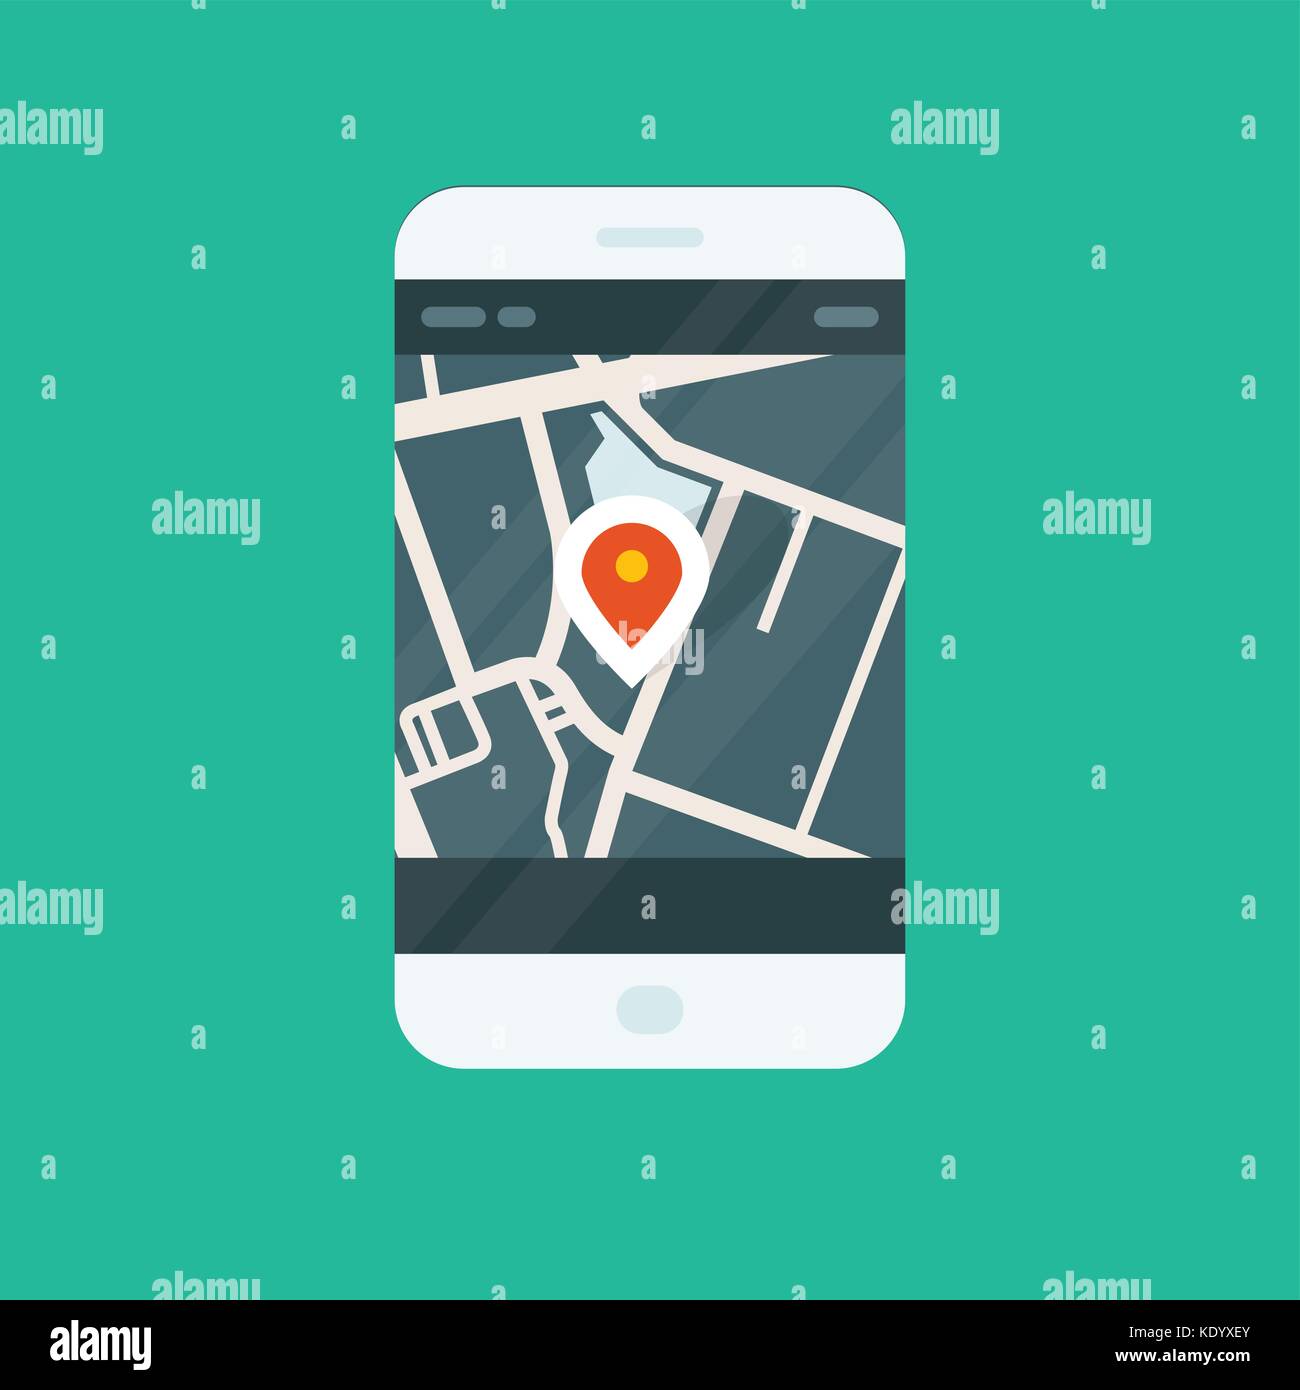 Stadt navigation Smartphone App-Standort auf Karte anzeigen Stock Vektor